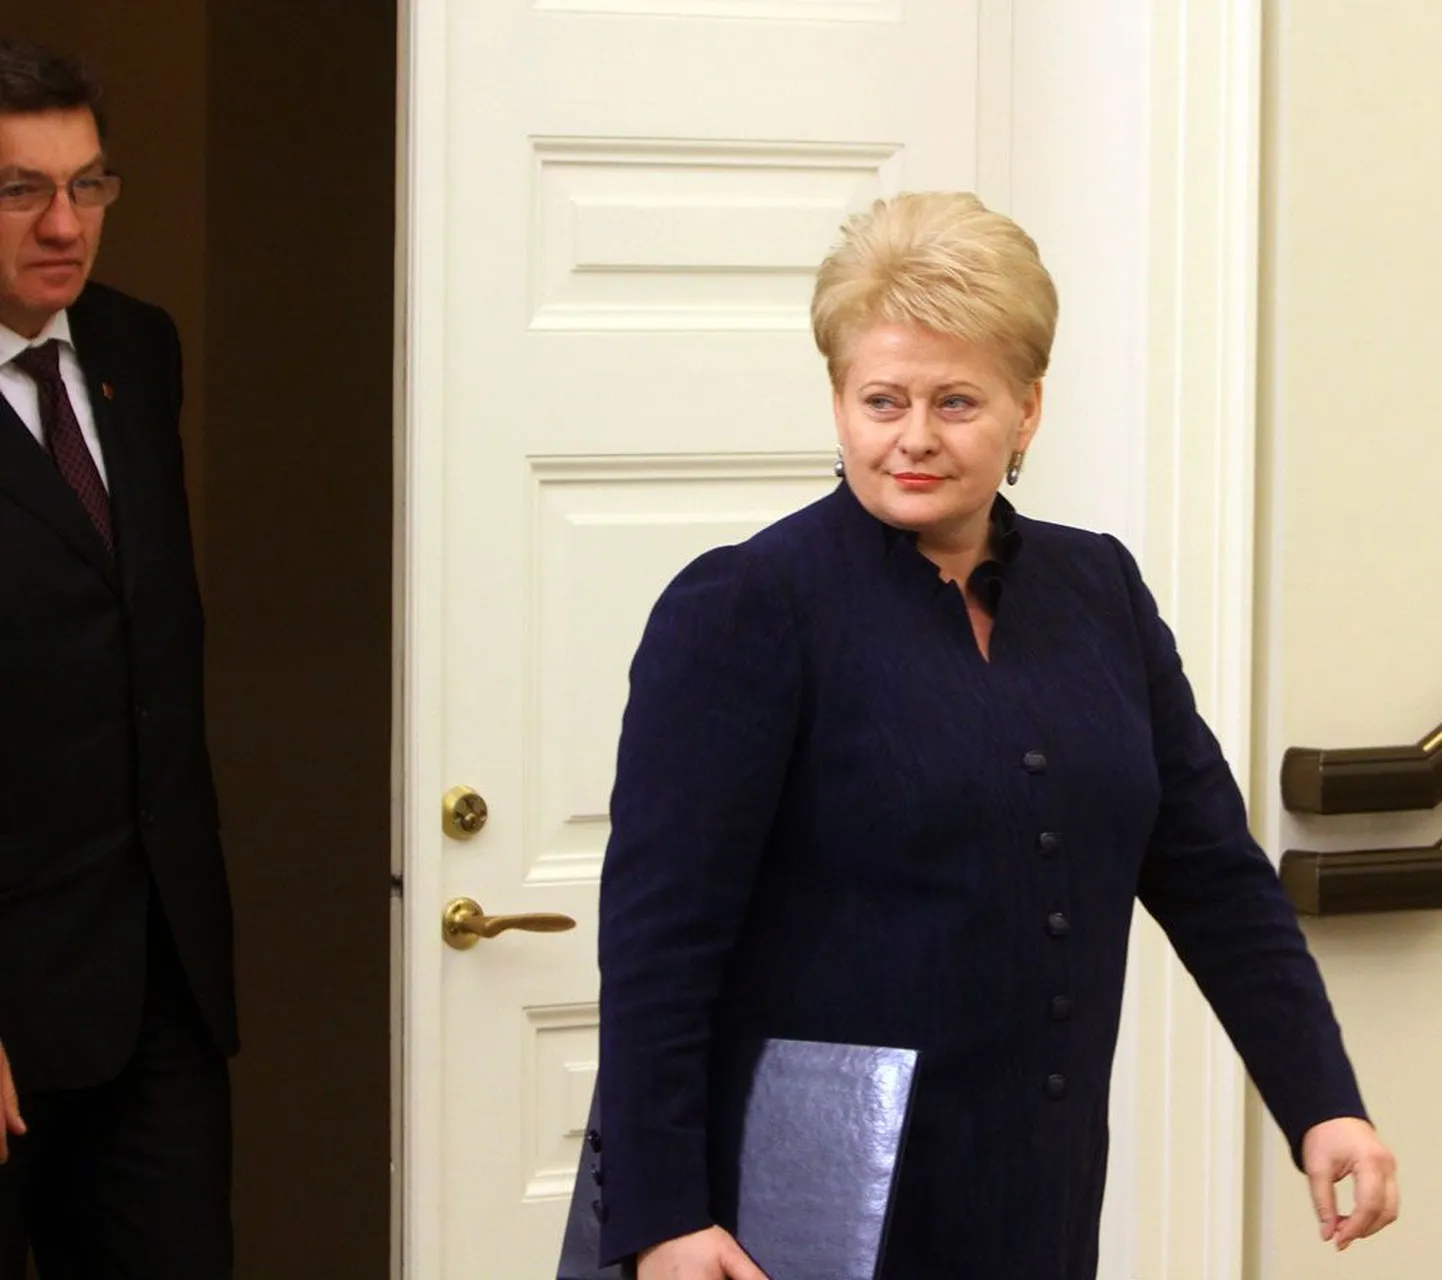 Leedu president Dalia Grybauskaitė ja eeldatav järgmine peaminister, sotside liider Algirdas Butkevičius möödunud kuu lõpus presidendilossis. Eile riigipea seimi ei ilmunud.